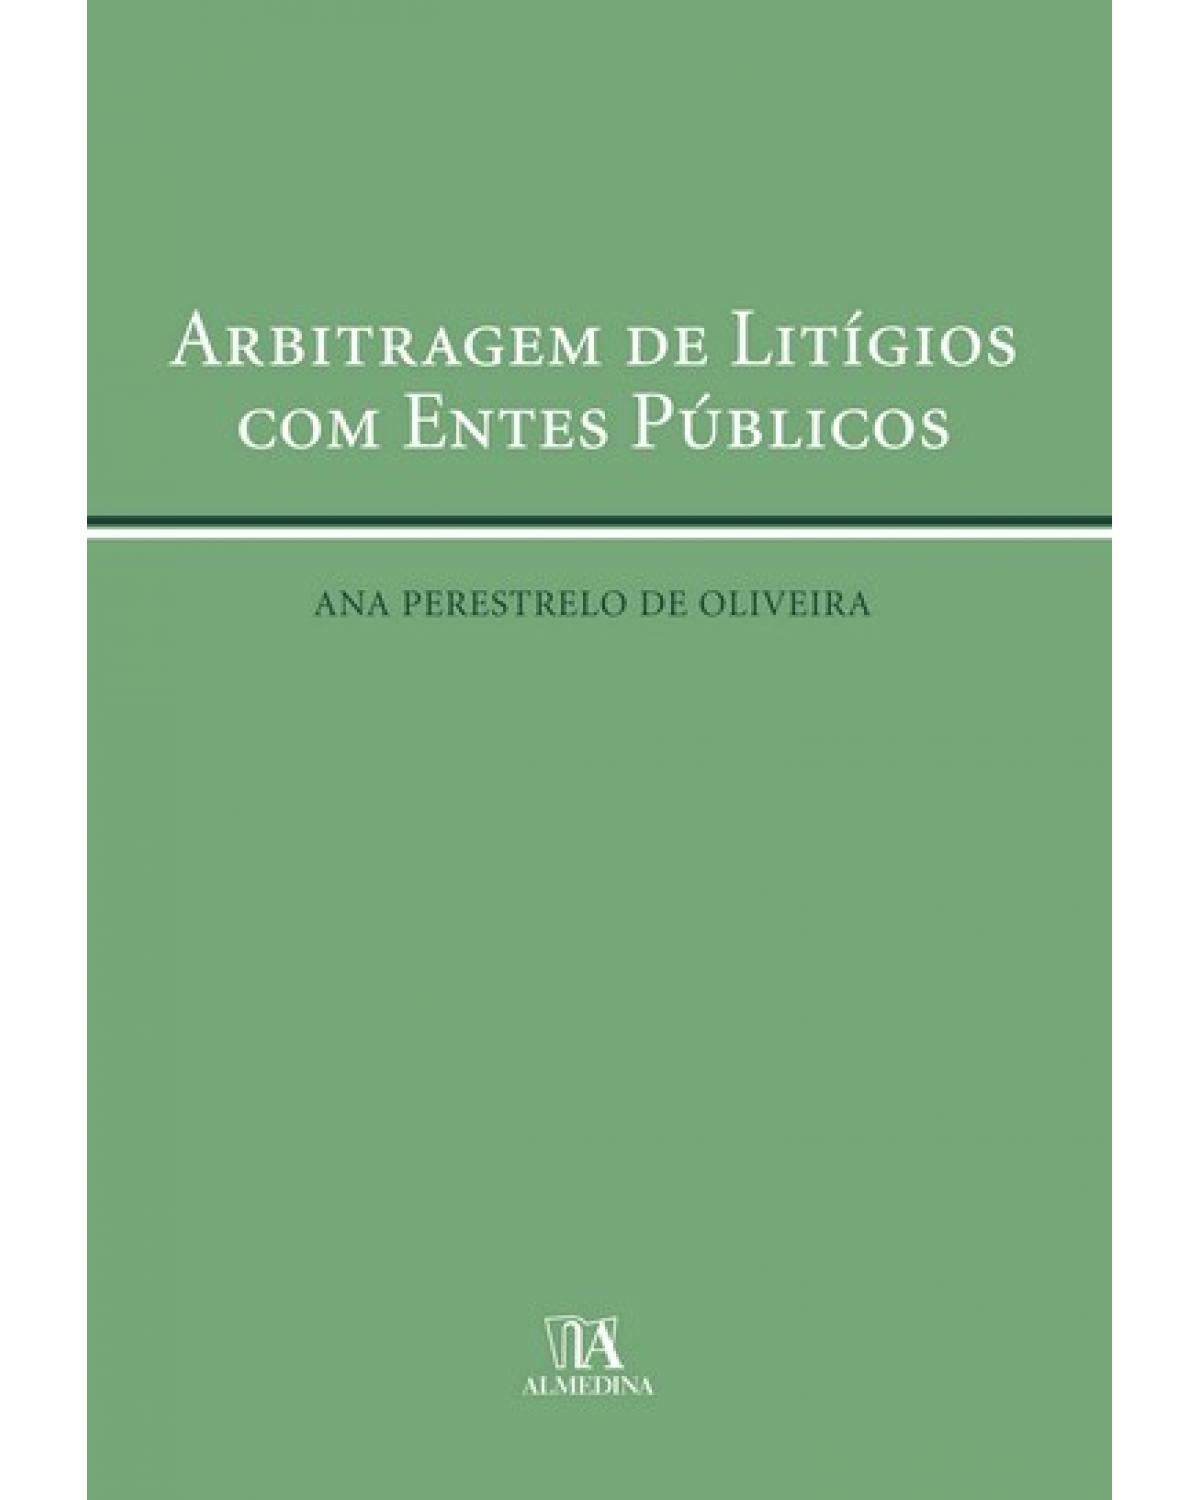 Arbitragem de litígios com entes públicos - 1ª Edição | 2007